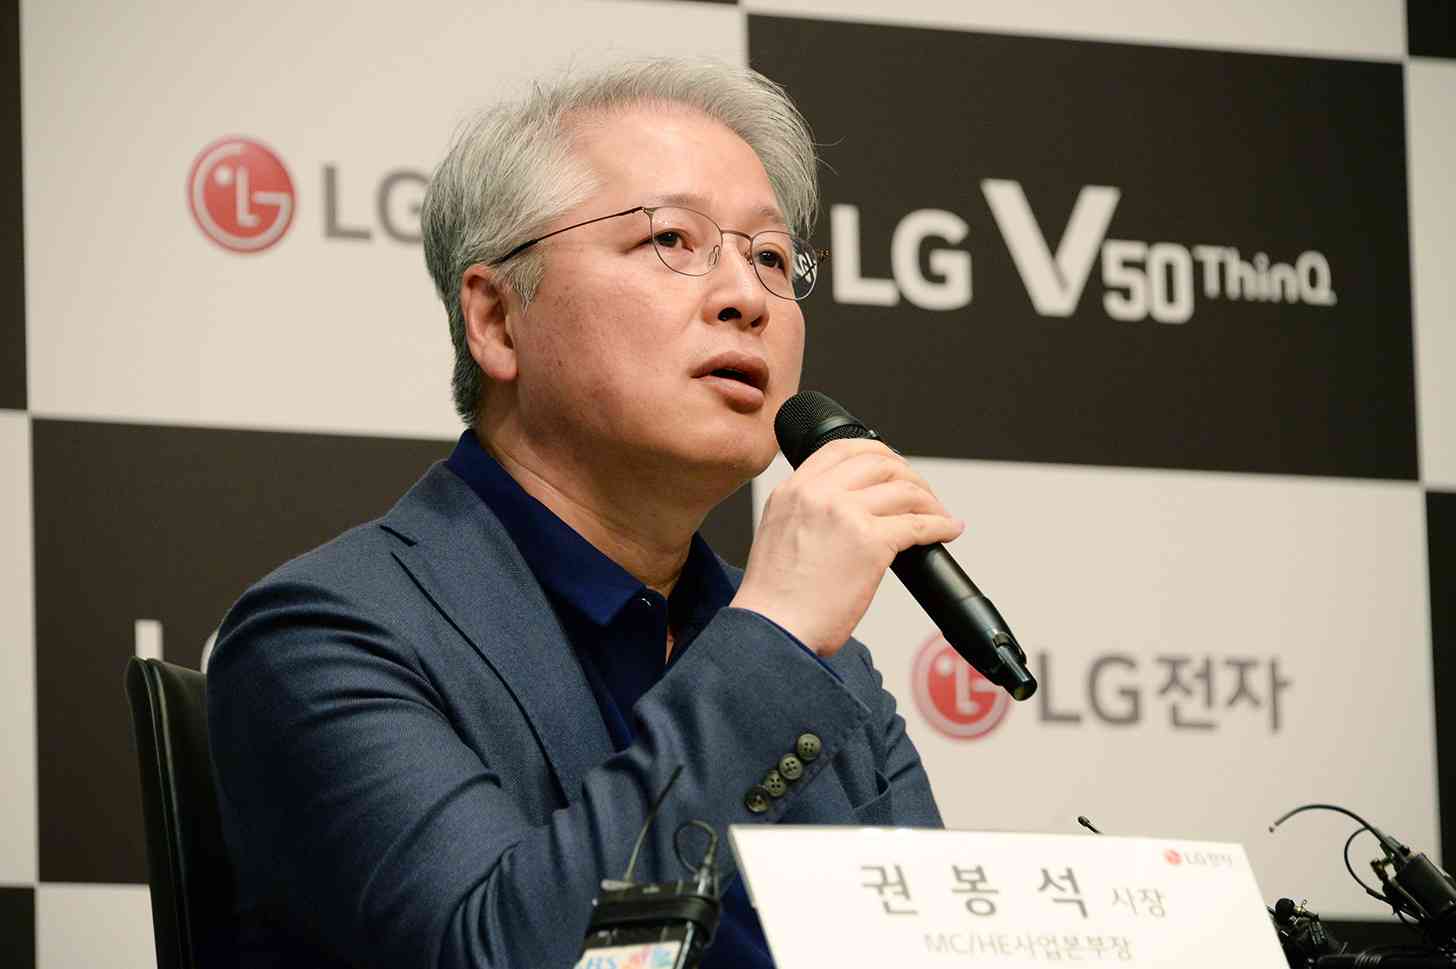 LG diz que V50 ThinQ será lançado em breve, mas não é um celular dobrável